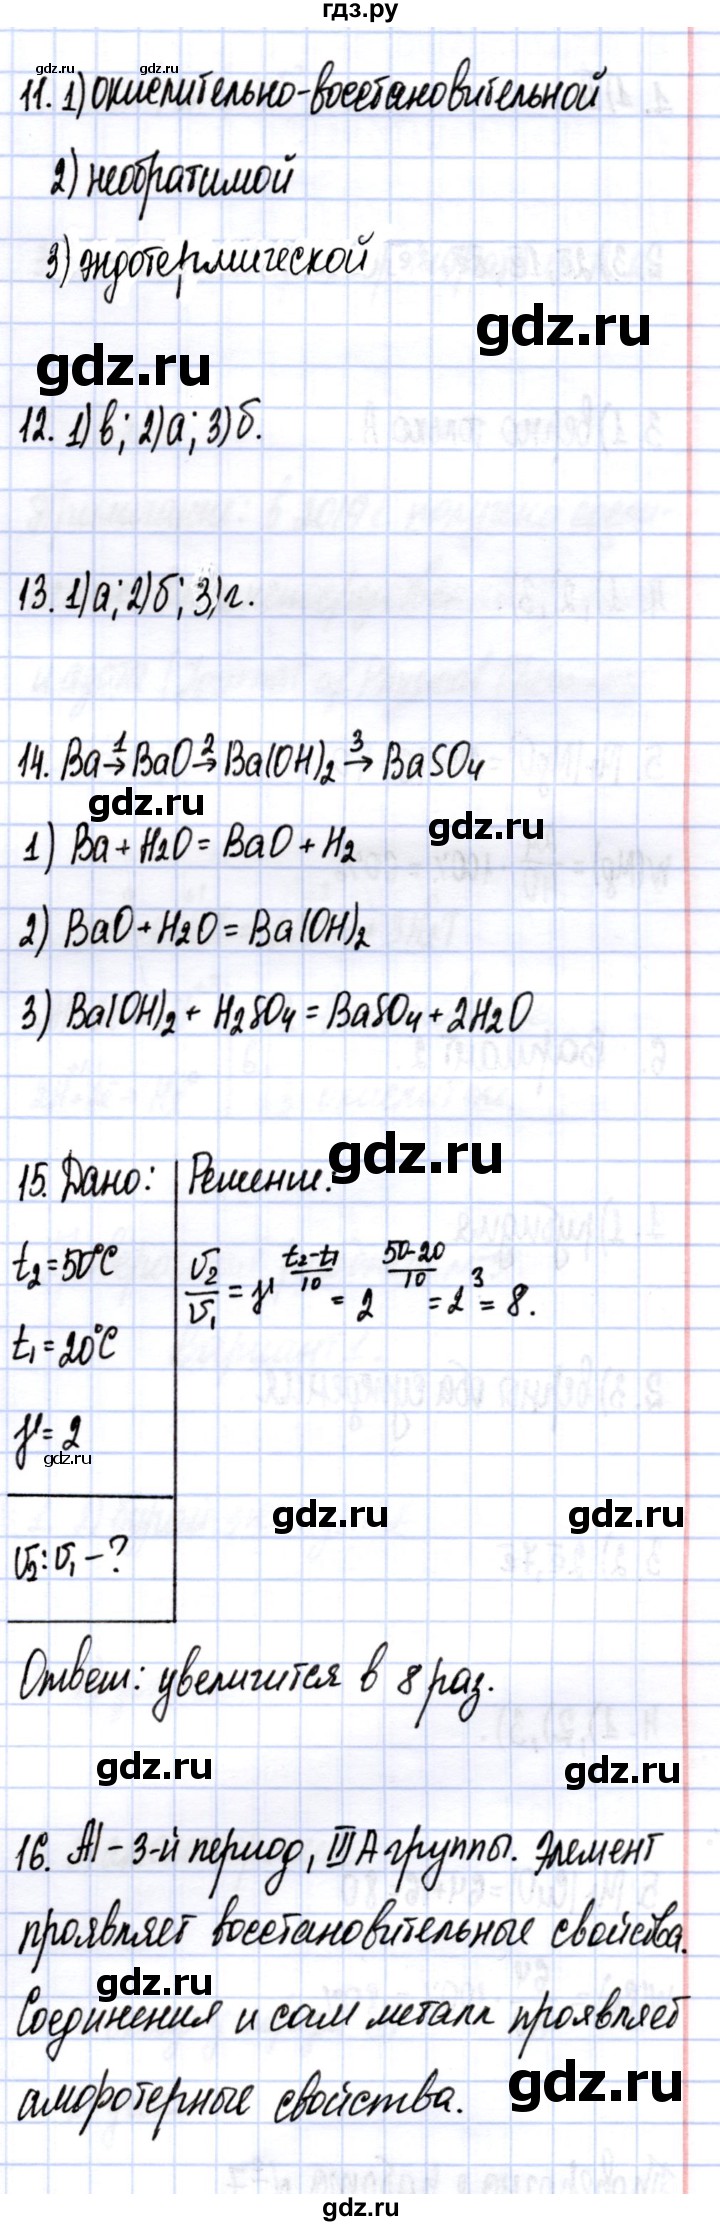 ГДЗ по химии 9 класс ГабриелянС контрольные работы  контрольные работы / КР-1. вариант - 2, Решебник